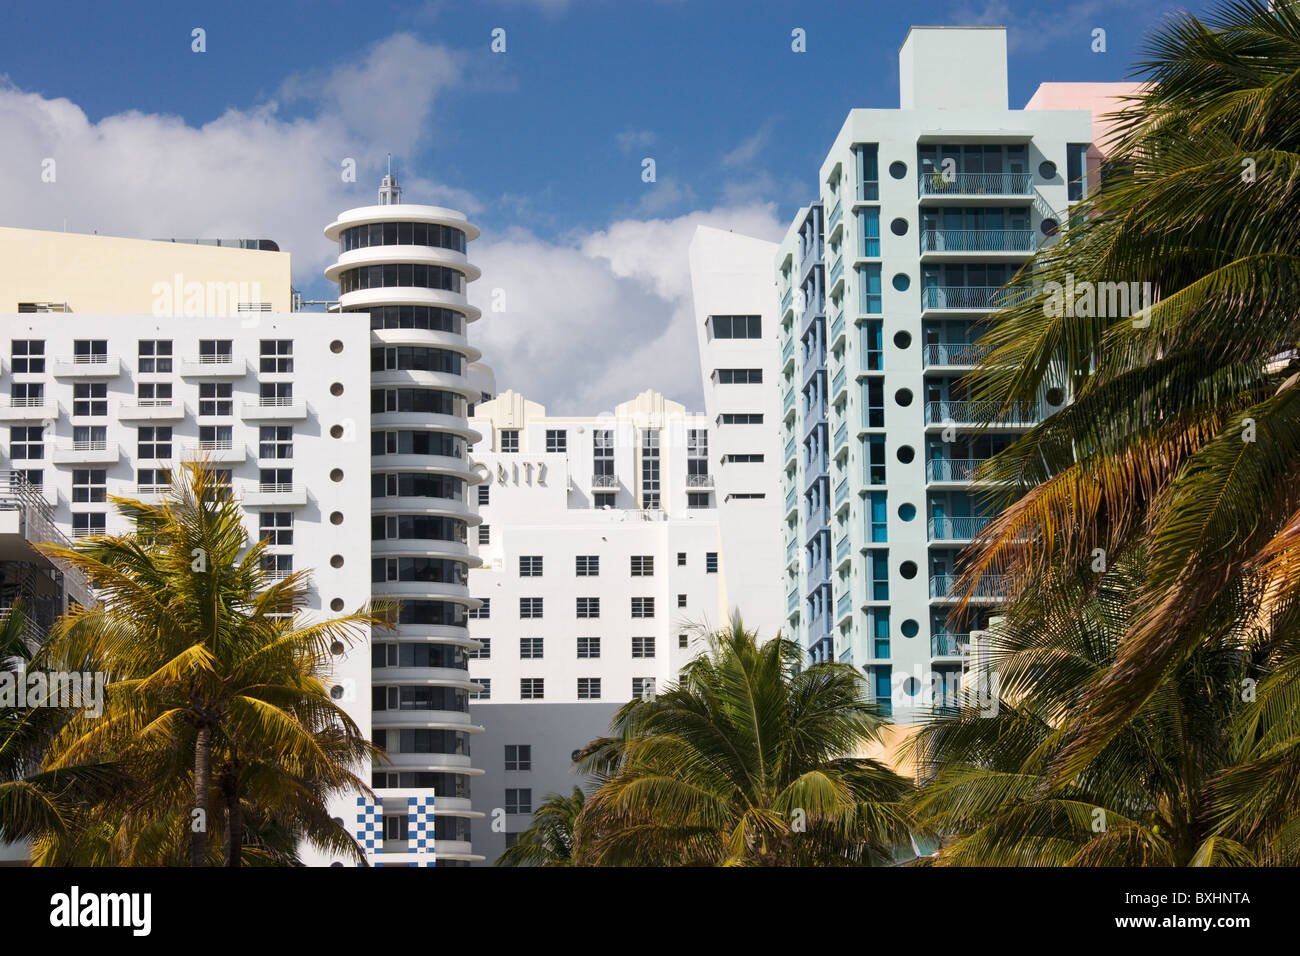 L'architecture Art déco de l'hôtel Royal Palm et des tours d'immeubles, South Beach, Miami, Floride, USA Banque D'Images